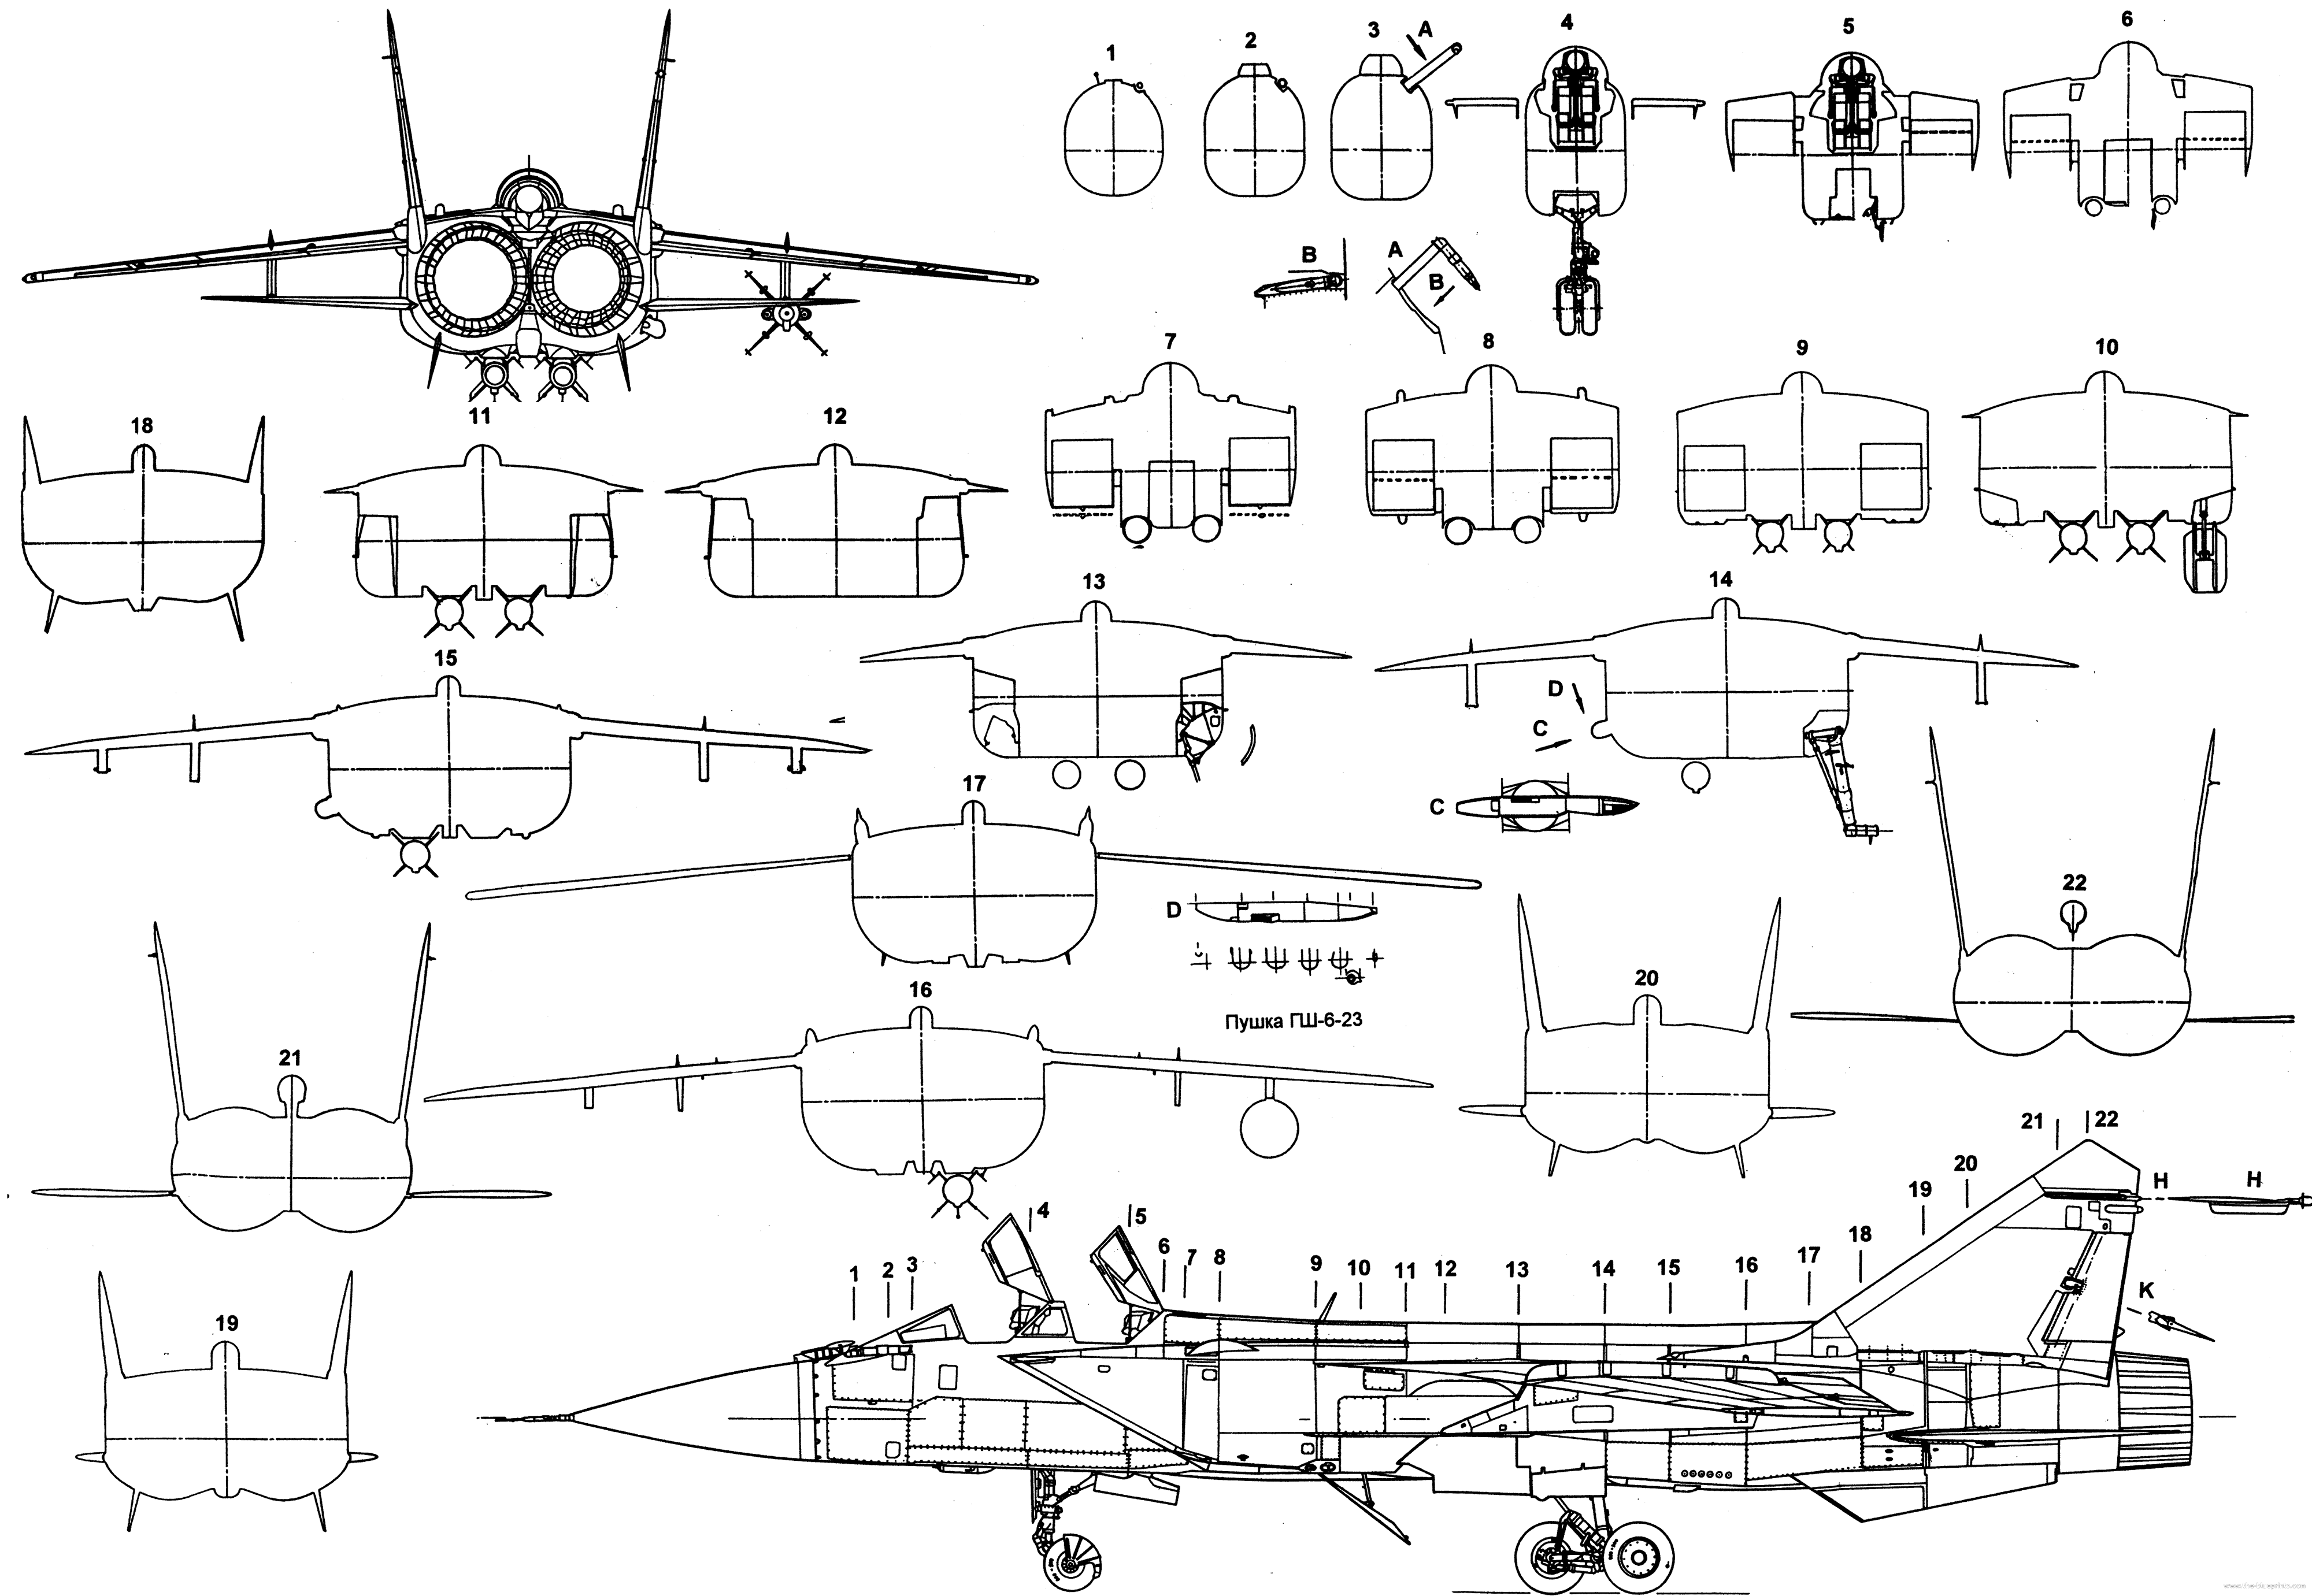 米格-31 战斗机  Mig-31 剖面图 截面图